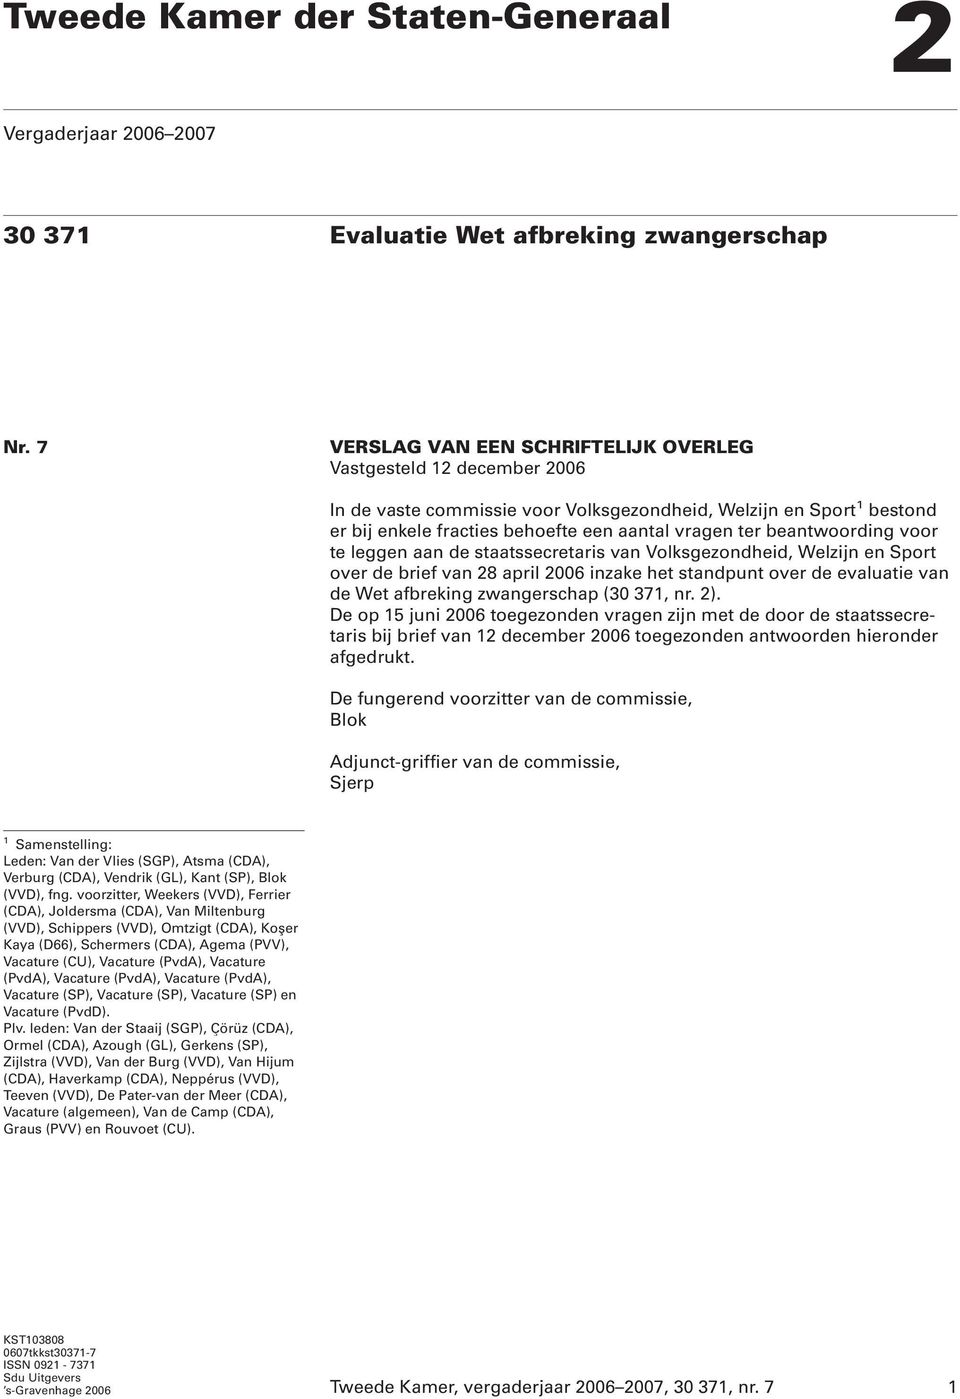 beantwoording voor te leggen aan de staatssecretaris van Volksgezondheid, Welzijn en Sport over de brief van 28 april 2006 inzake het standpunt over de evaluatie van de Wet afbreking zwangerschap (30